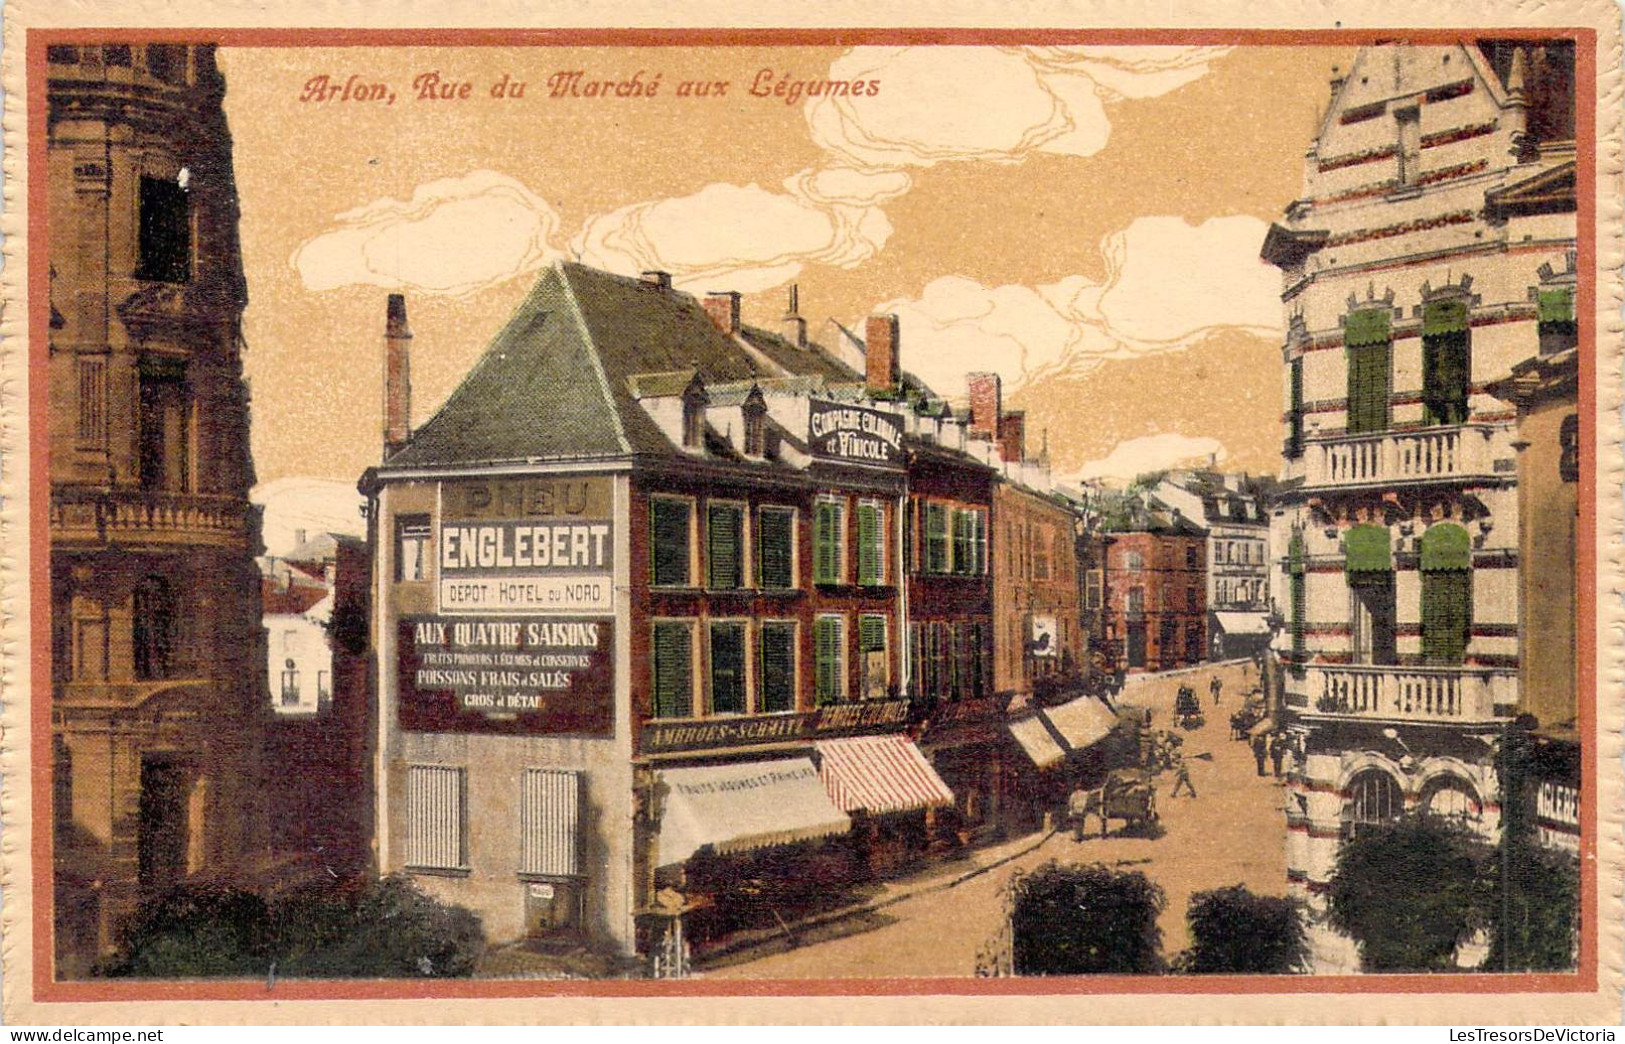 BELGIQUE - LUXEMBOURG - ARLON - Rue Du Marché Aux Légumes - Edition Guggenheim & Co - Carte Postale Ancienne - Aarlen